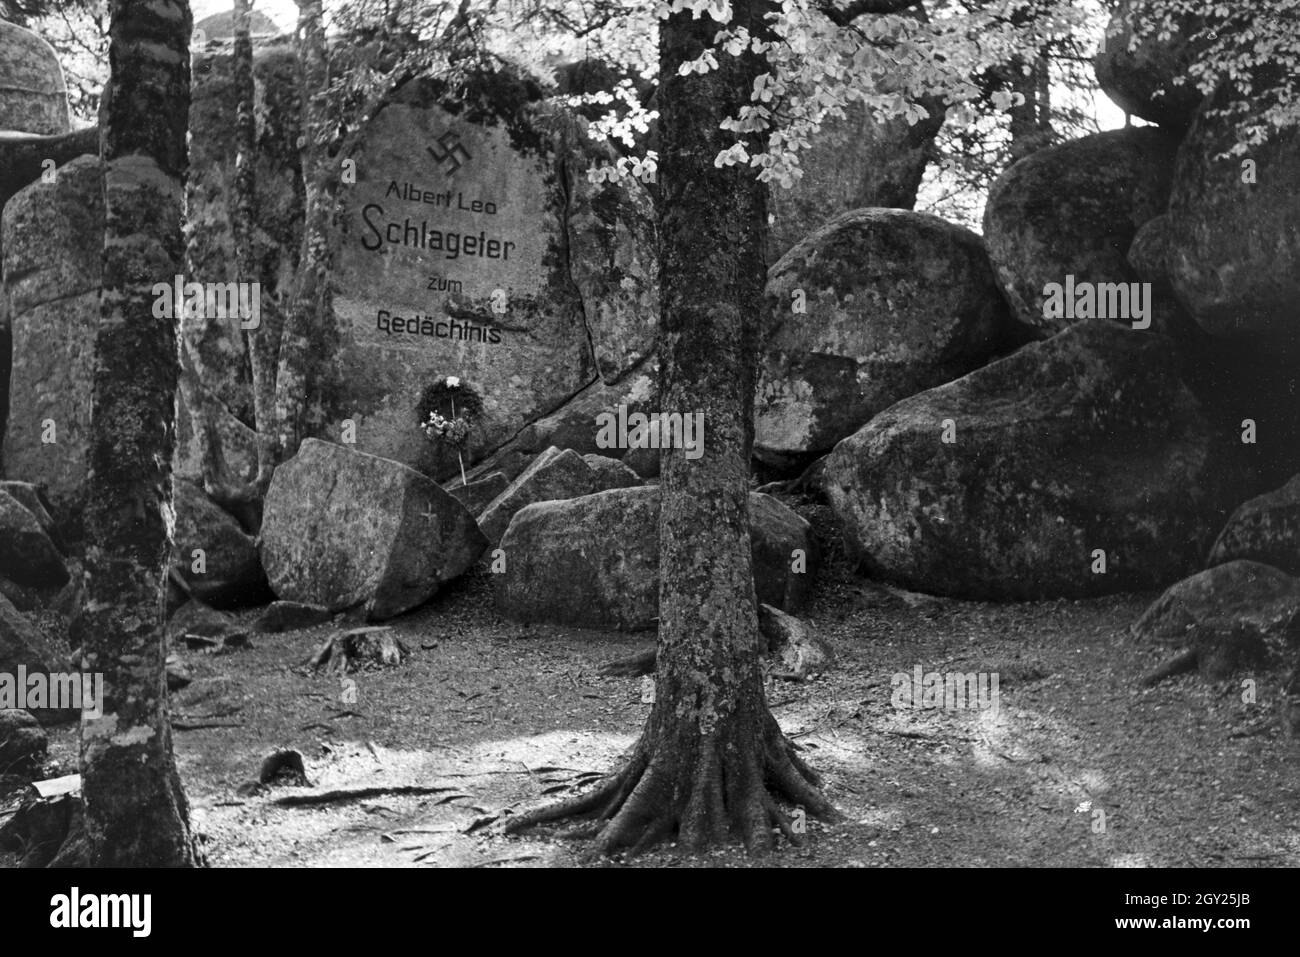 Ein Denkmal von Albert Leo Schlageter im Schwarzwald in der Nähe von Berg Brend, Deutschland 1930er Jahre. A memorial of Albert Leo Schlageter in the Black Forest near mountain Brend, Germany 1930s. Stock Photo